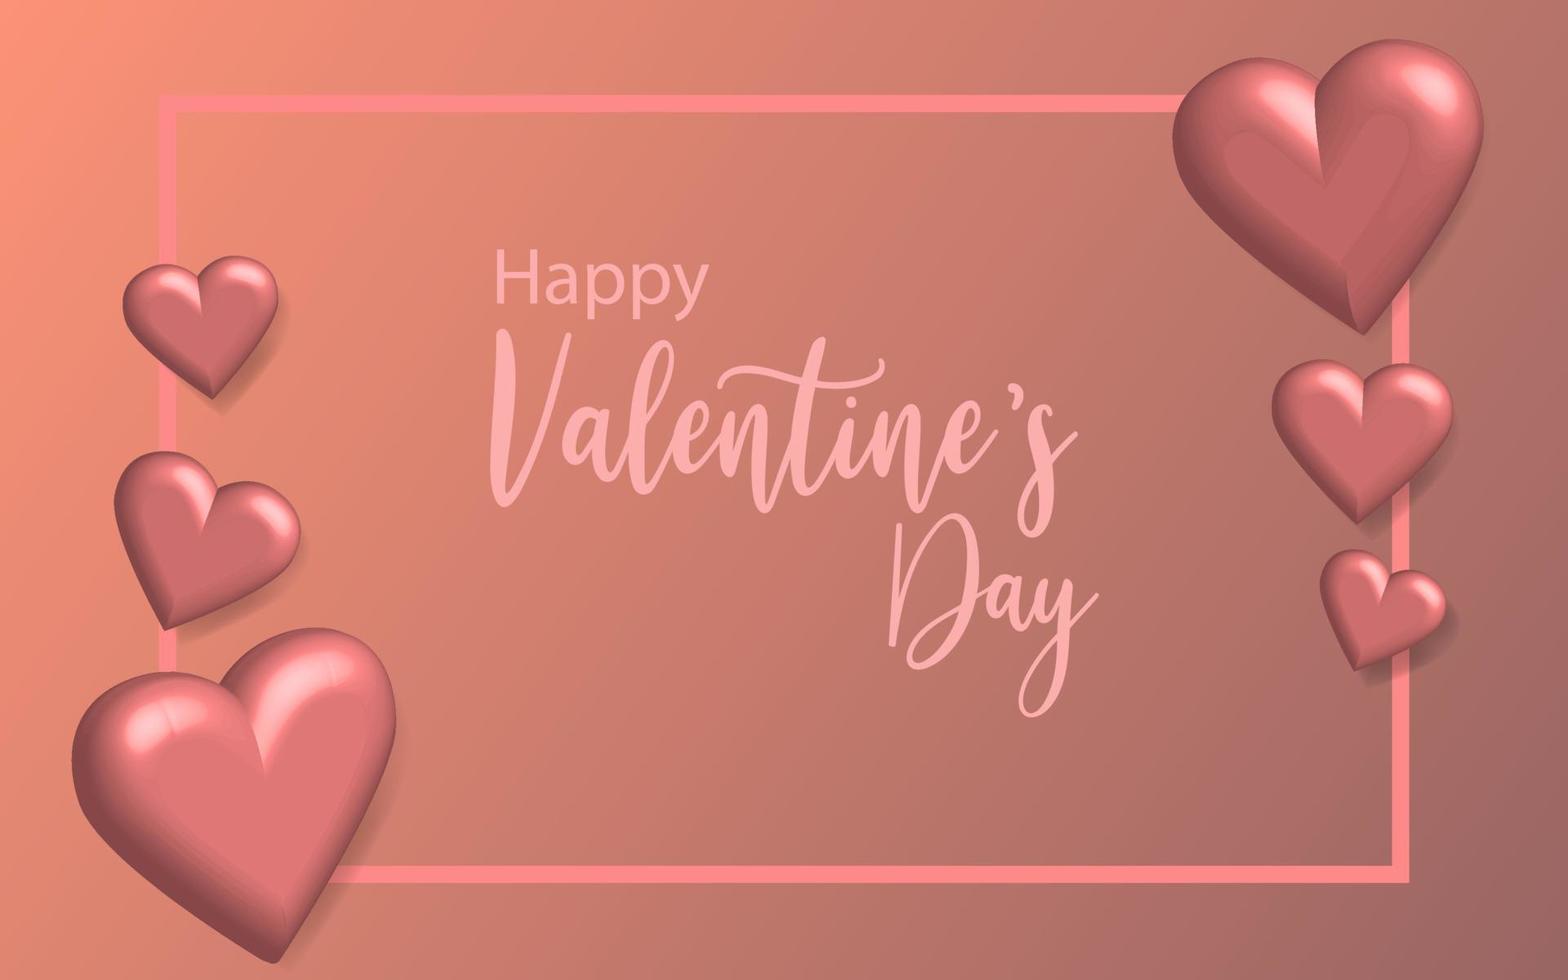 Ilustración realista del corazón del cartel 3d, elemento de celebración gráfico de decoración de promoción romance feliz día de san valentín vector